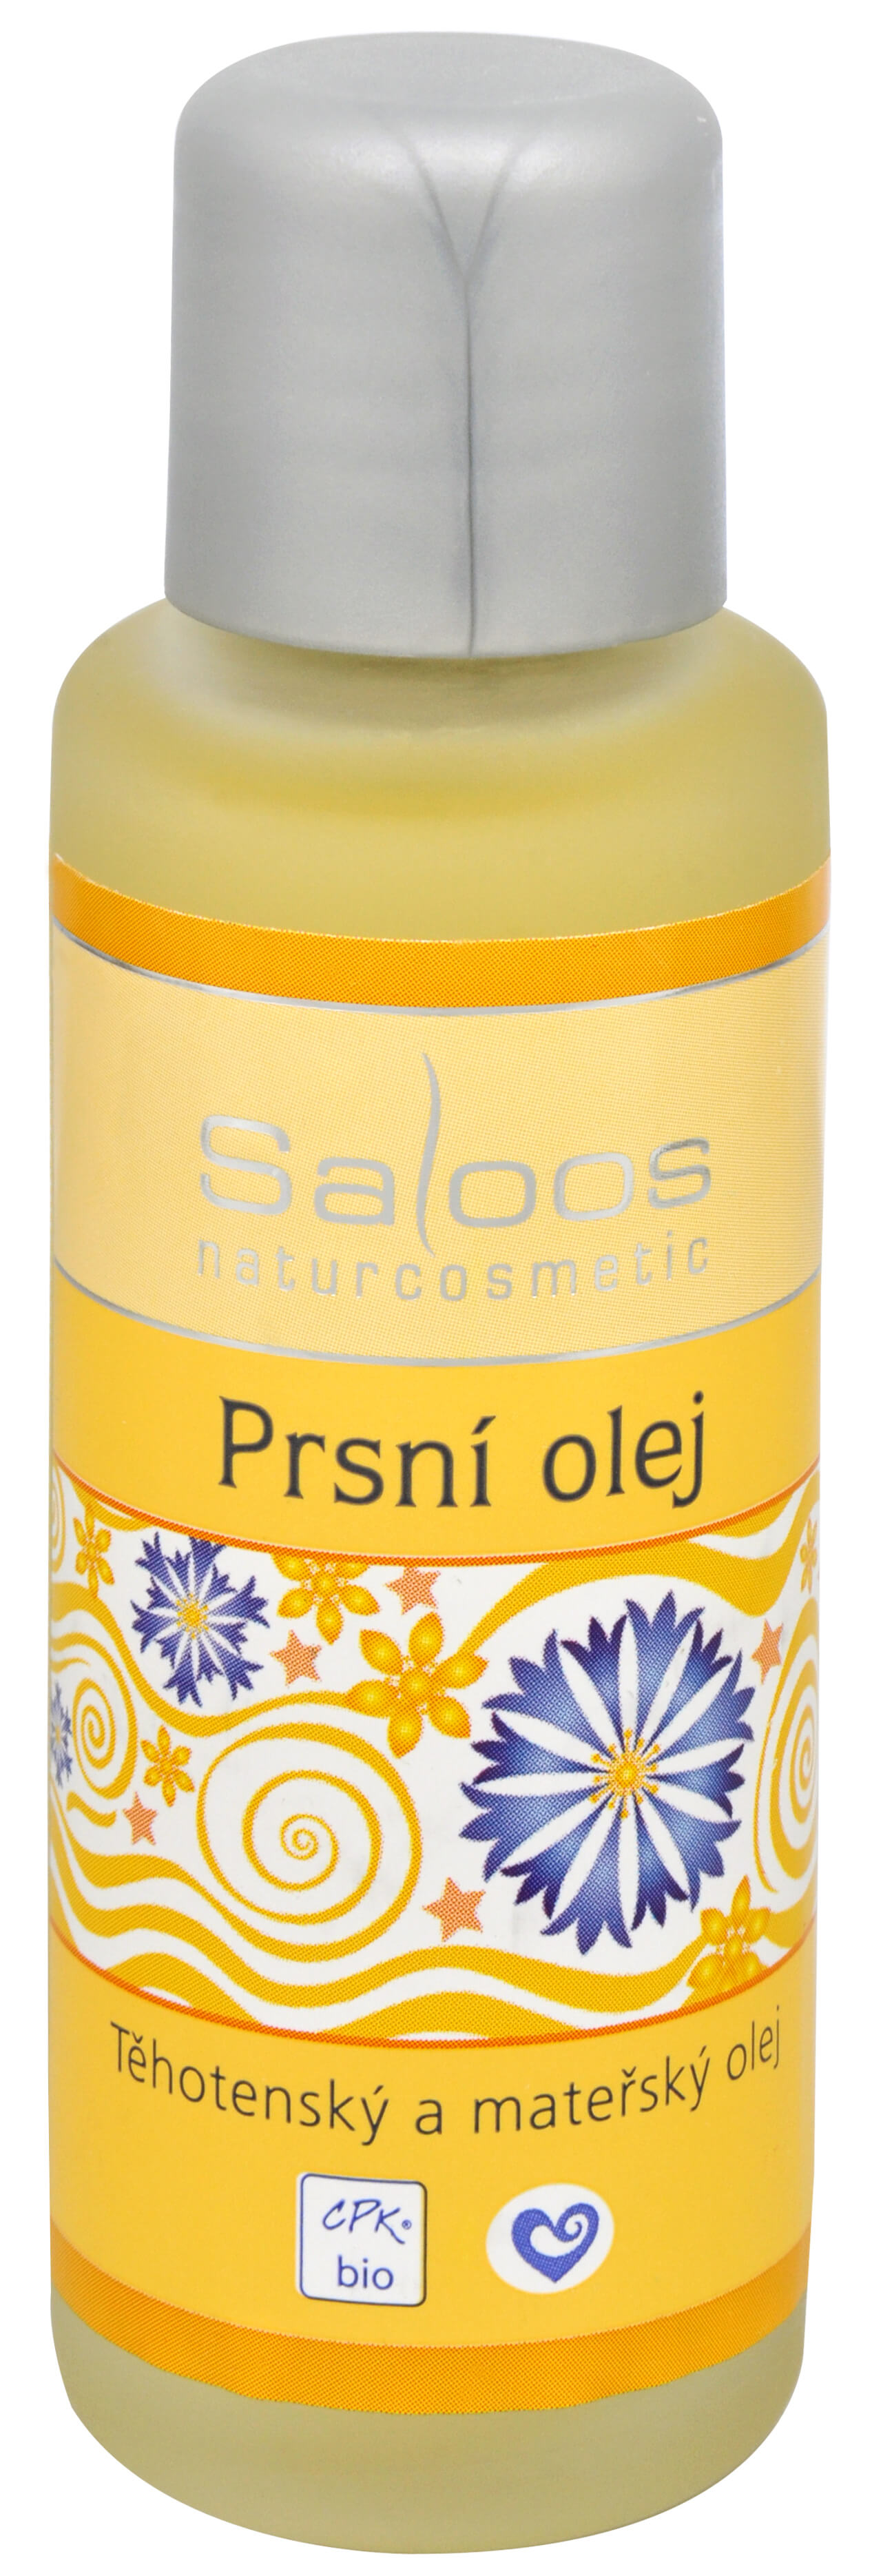 Zobrazit detail výrobku Saloos Bio Prsní olej - těhotenský a mateřský olej 50 ml